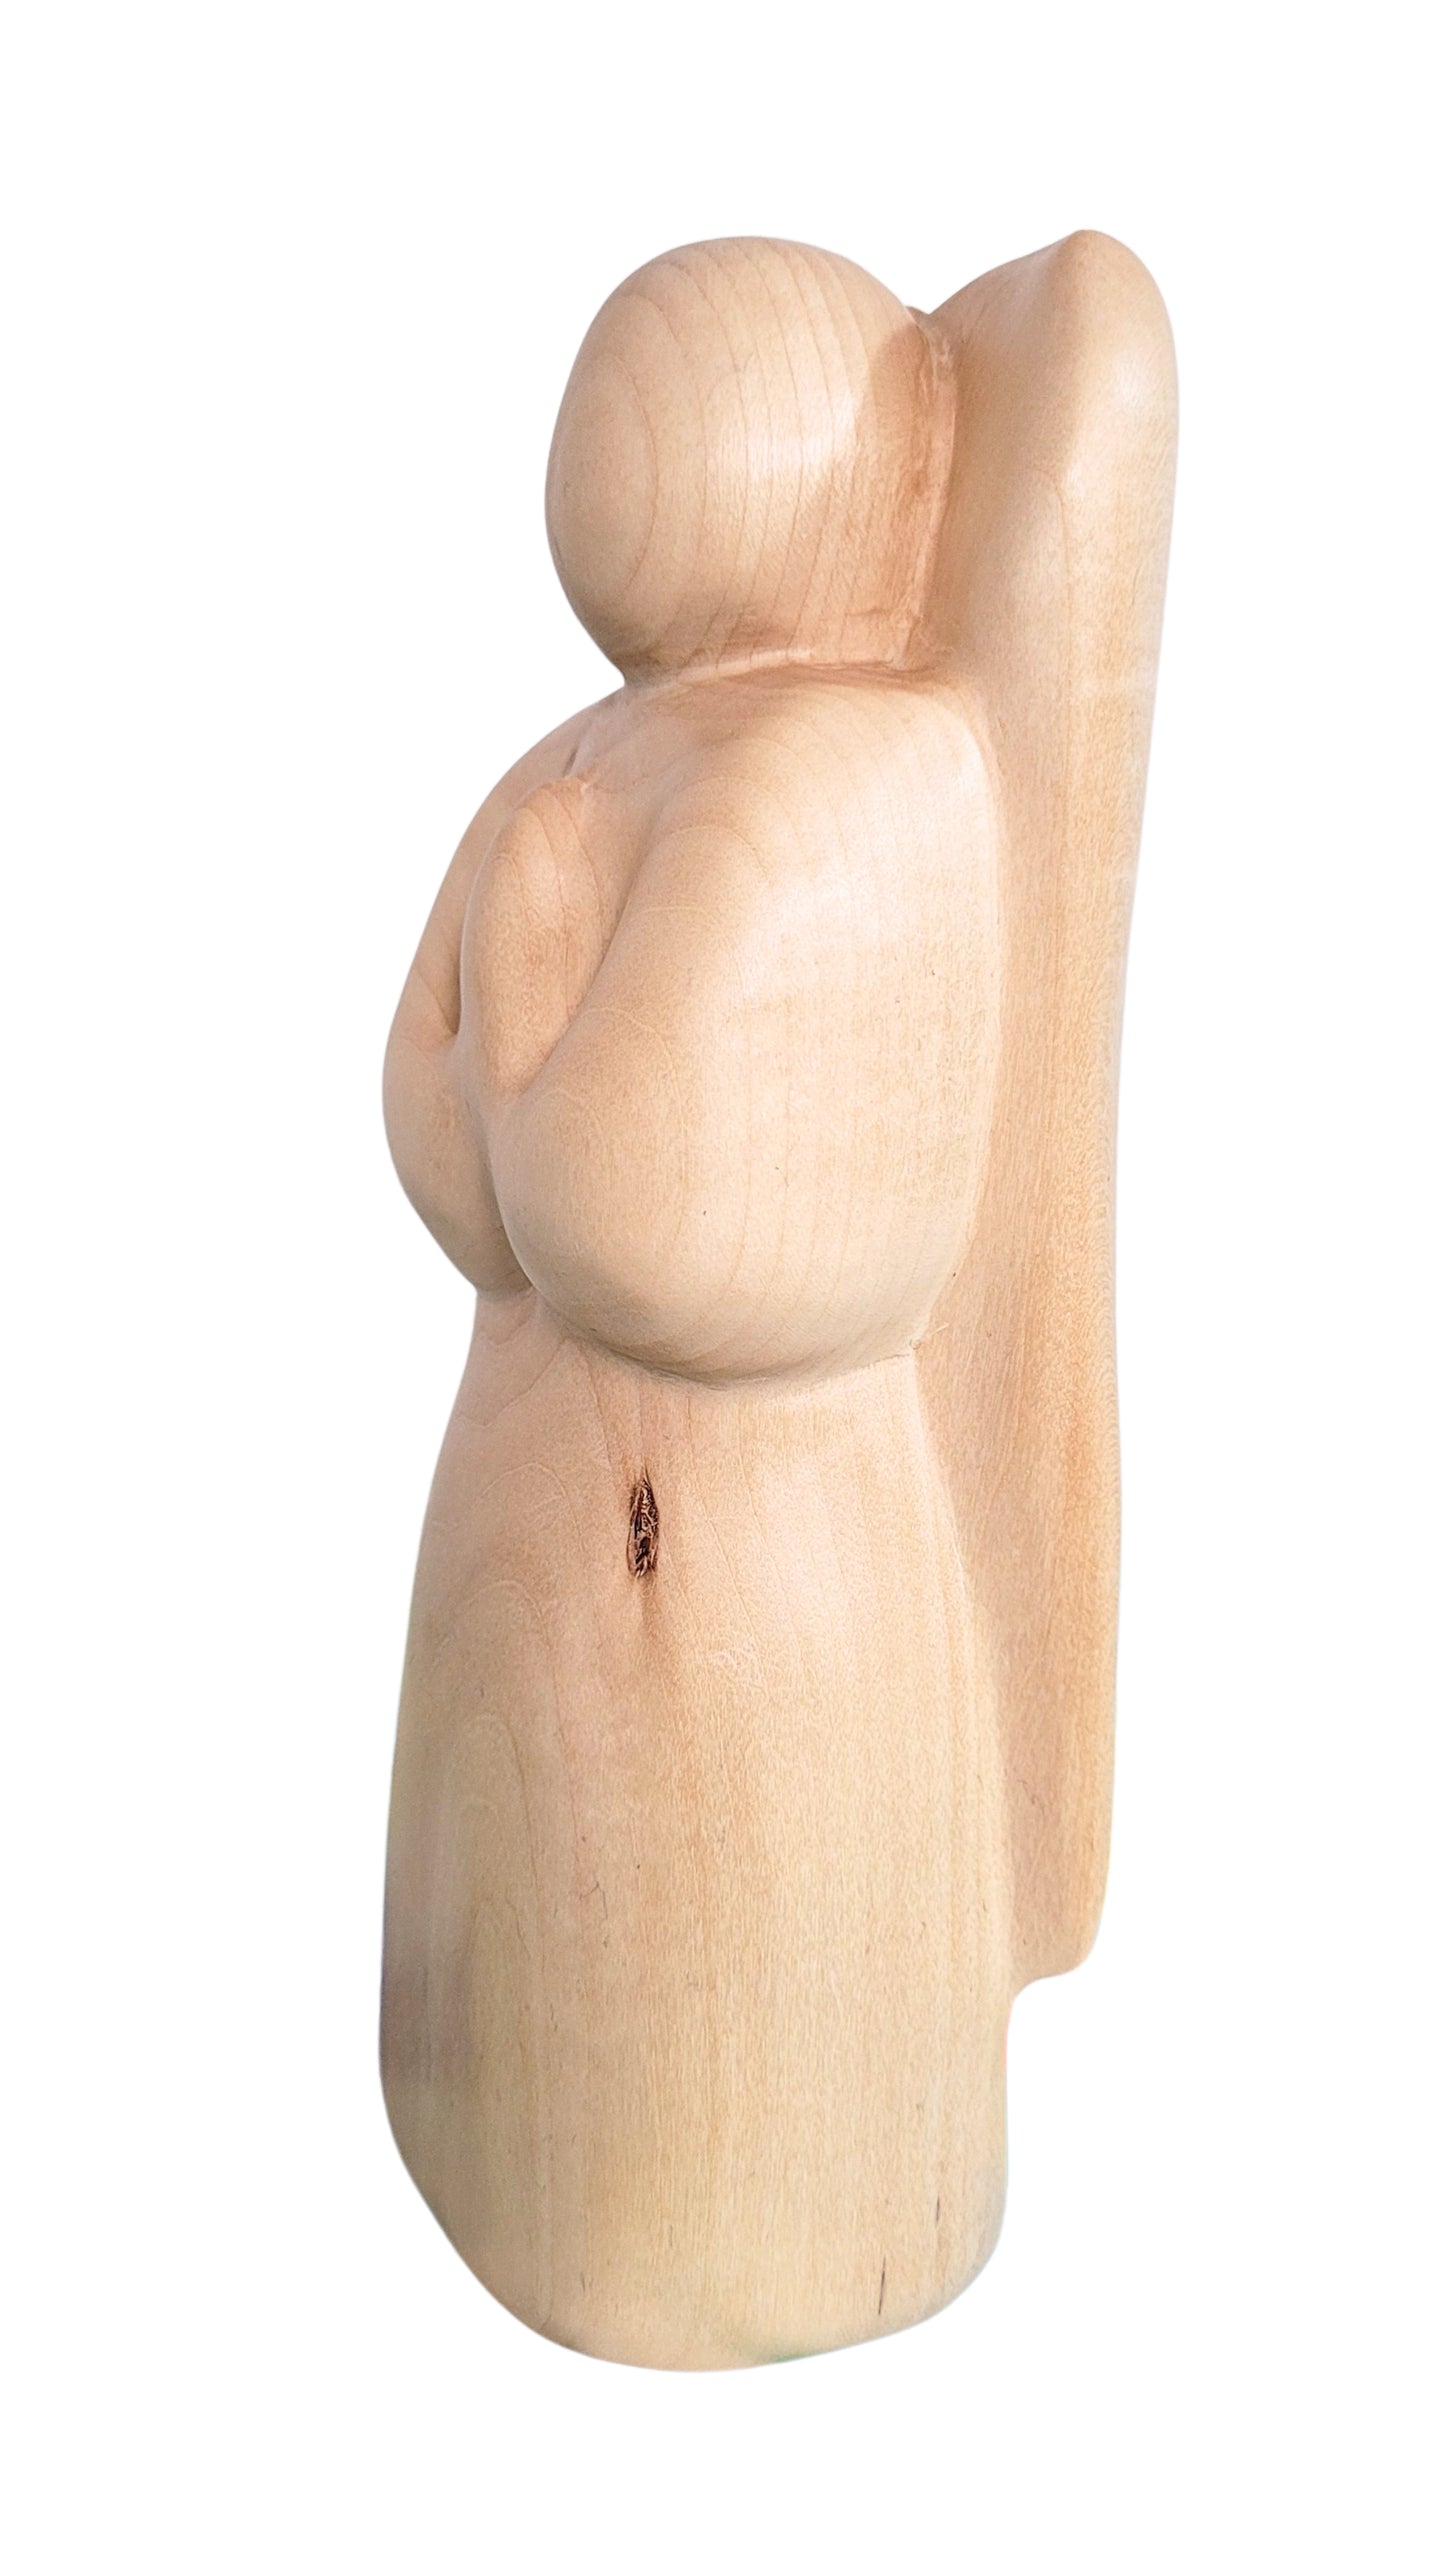 Petit Ange, sculpture contemporaine en bois de tilleul, Eveline David-Valette